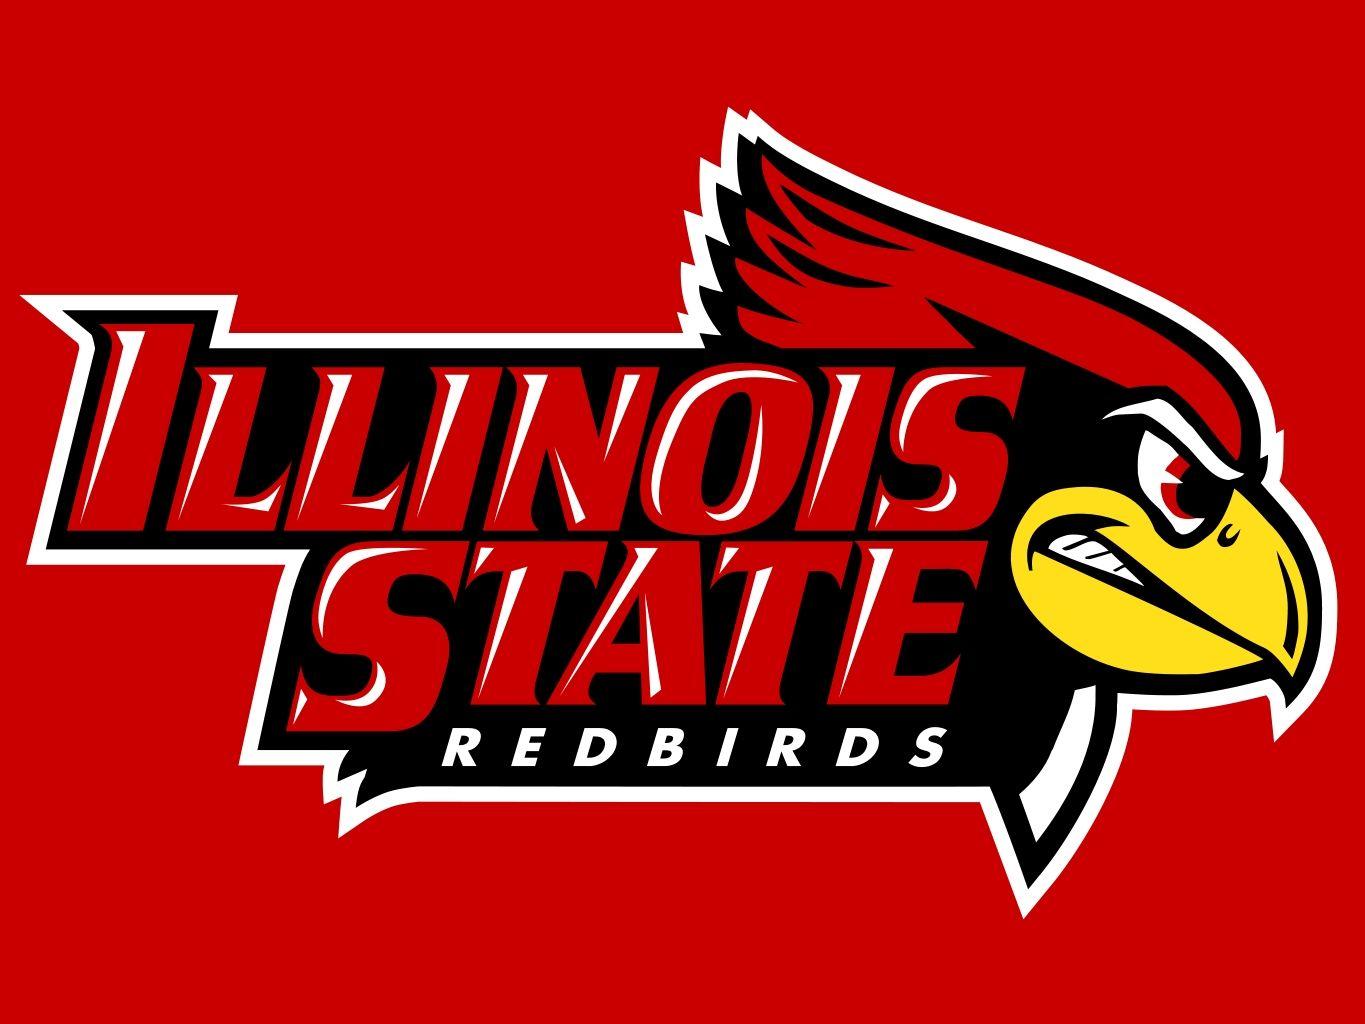 Illinois State Football Logo - Illinois state university Logos